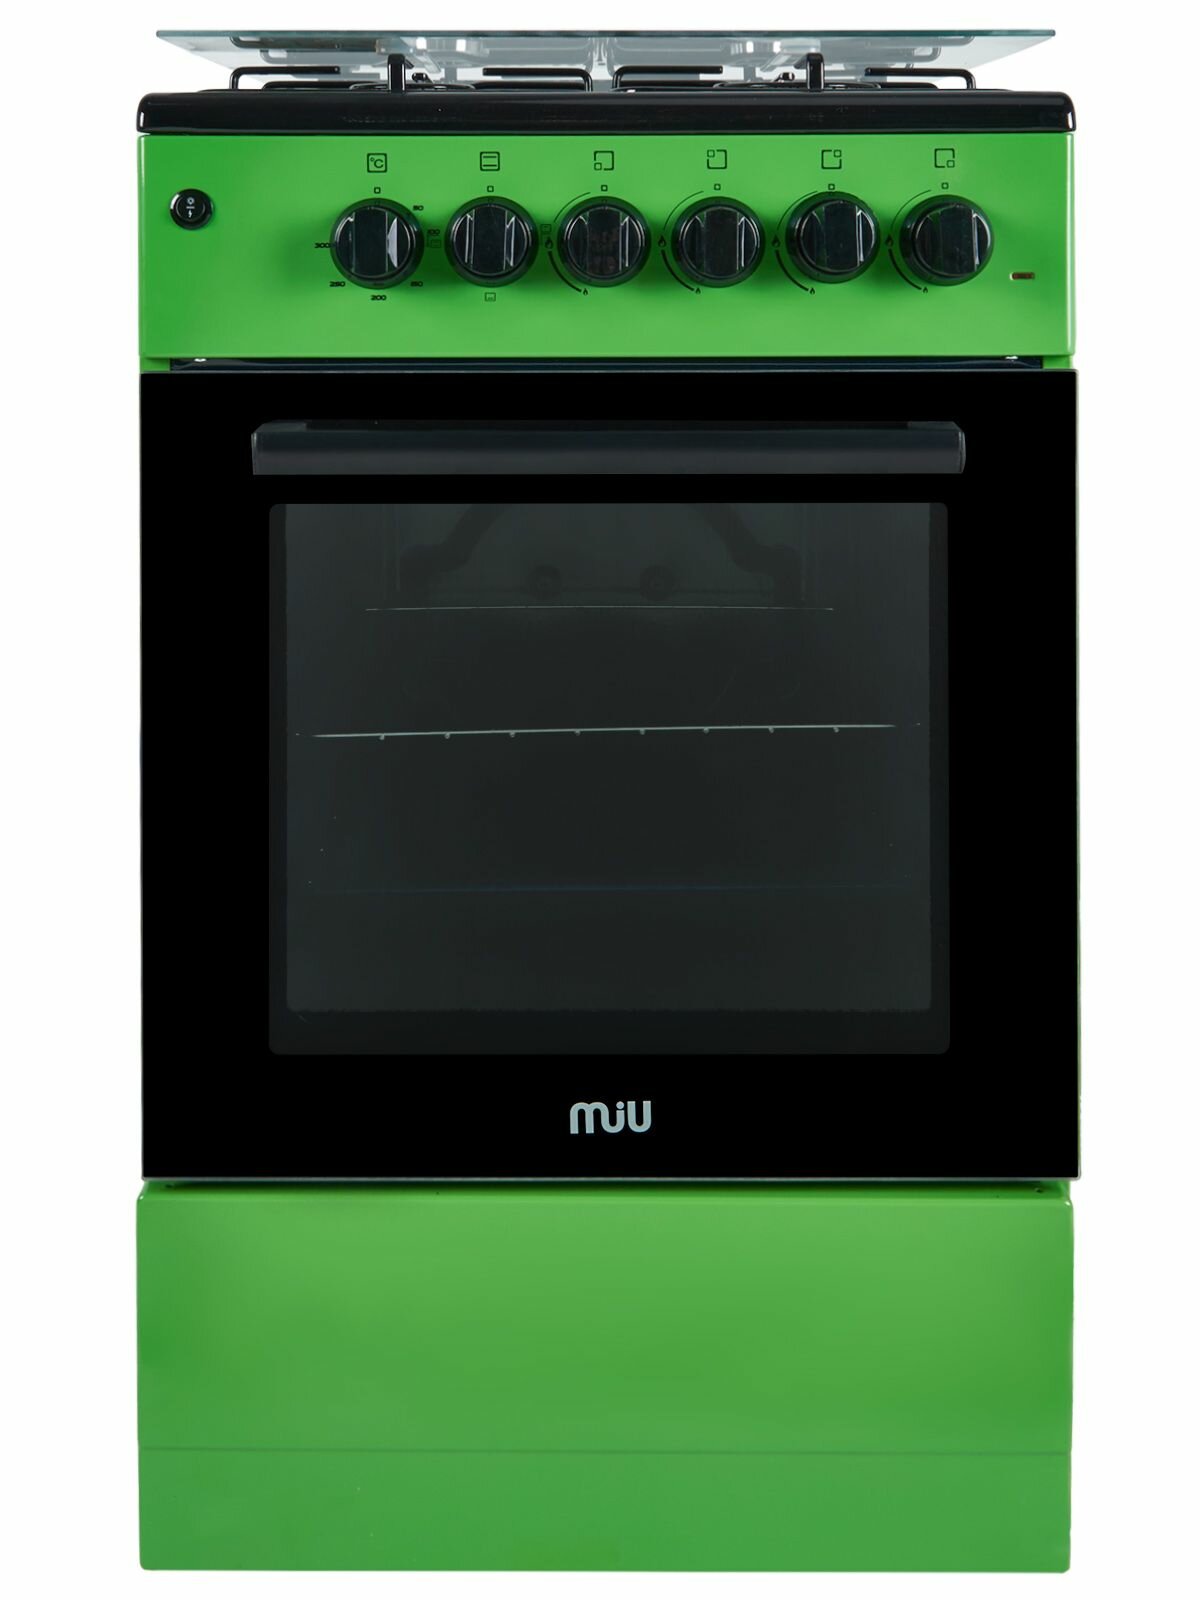 Кухонная плита MIU 5013 ERP ГК LUX зеленая 50 см, газовая с электрической духовкой, газ-контроль, электроподжиг, 3 режима духовки